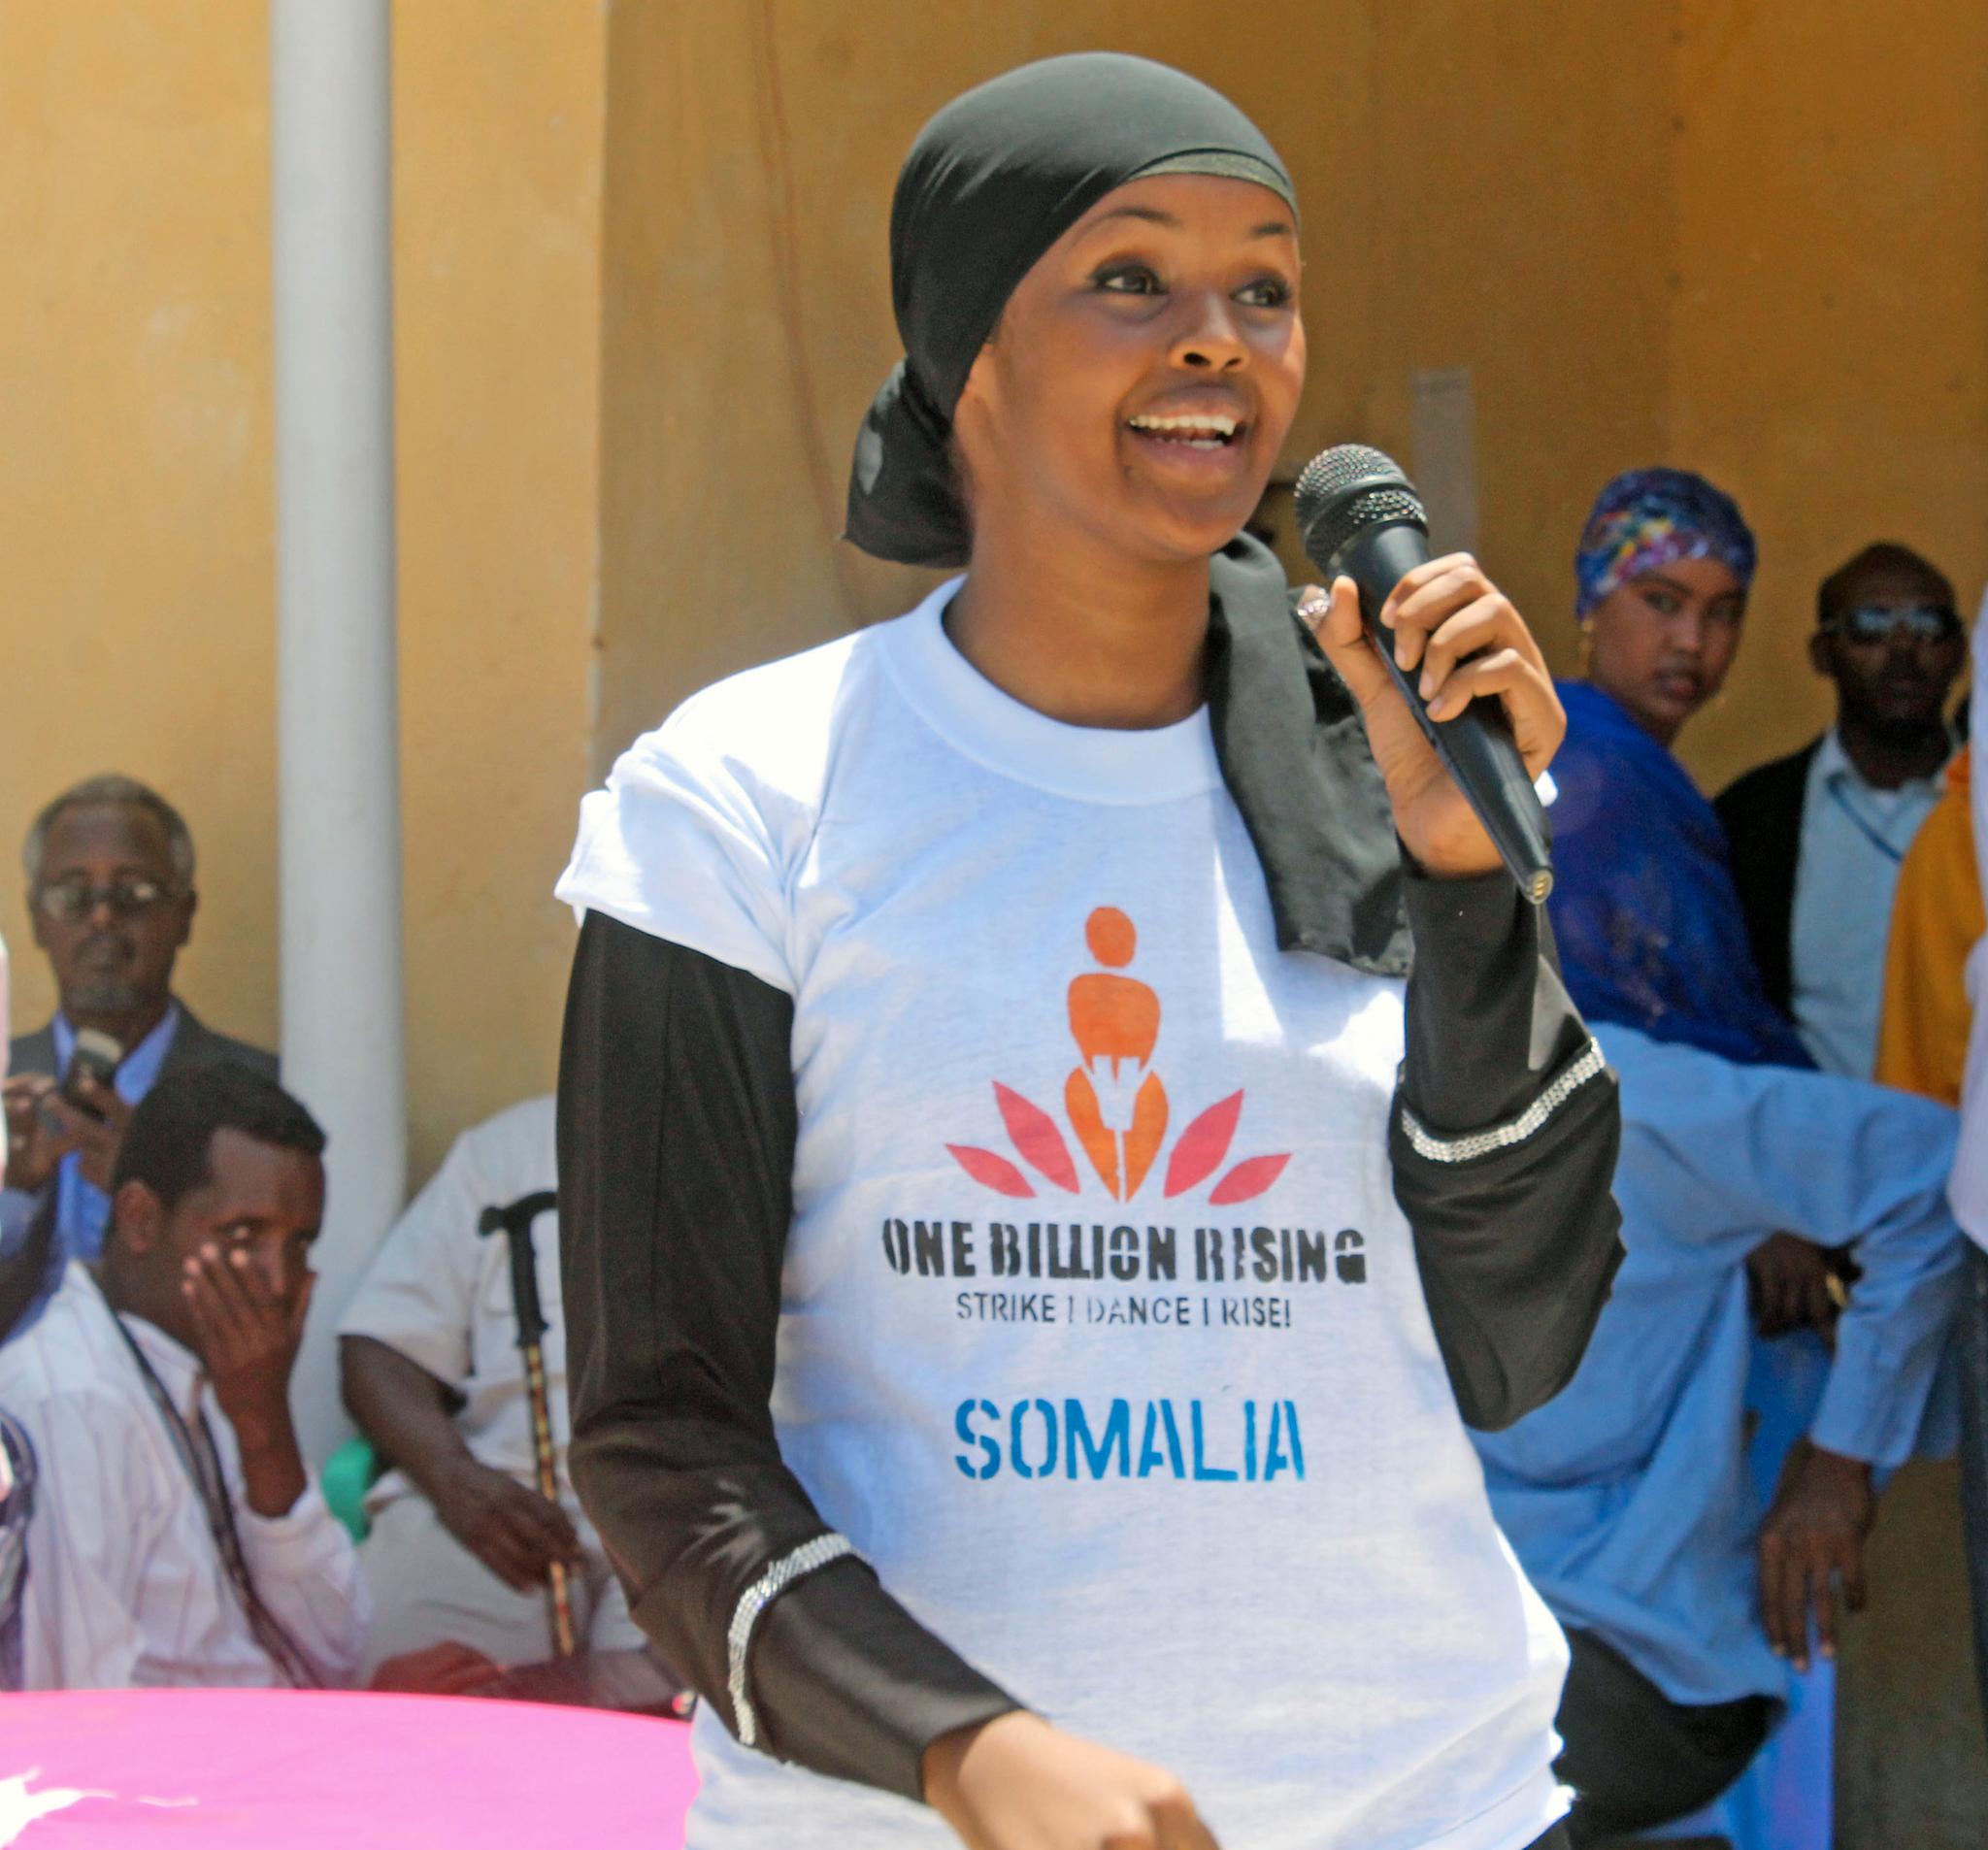  Ilwad Elman fra Somalia er en av de heteste kandidatene til å vinne Nobels fredspris. Vinneren annonseres fredag 11. oktober.